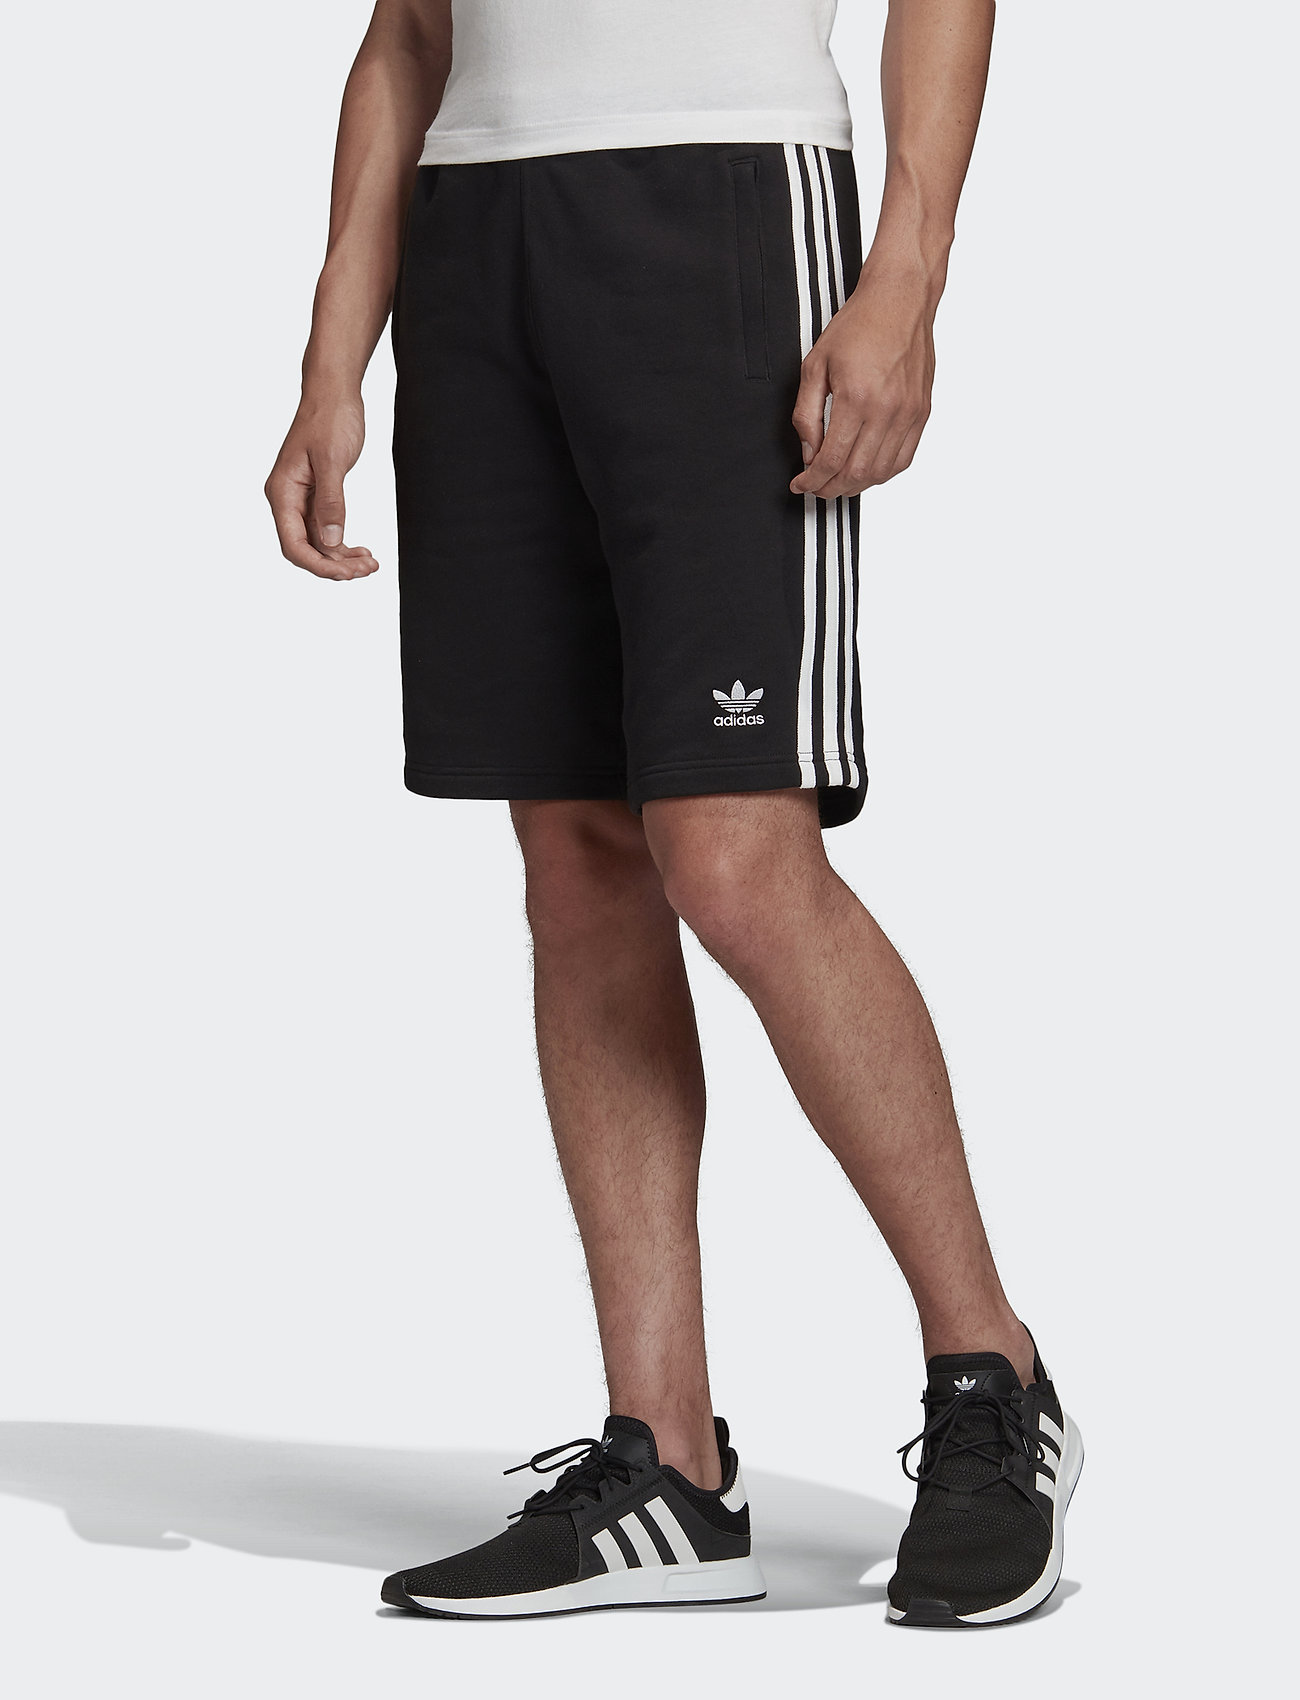 3-stripe Short (Black) (34.95 €) - adidas Originals - | Boozt.com